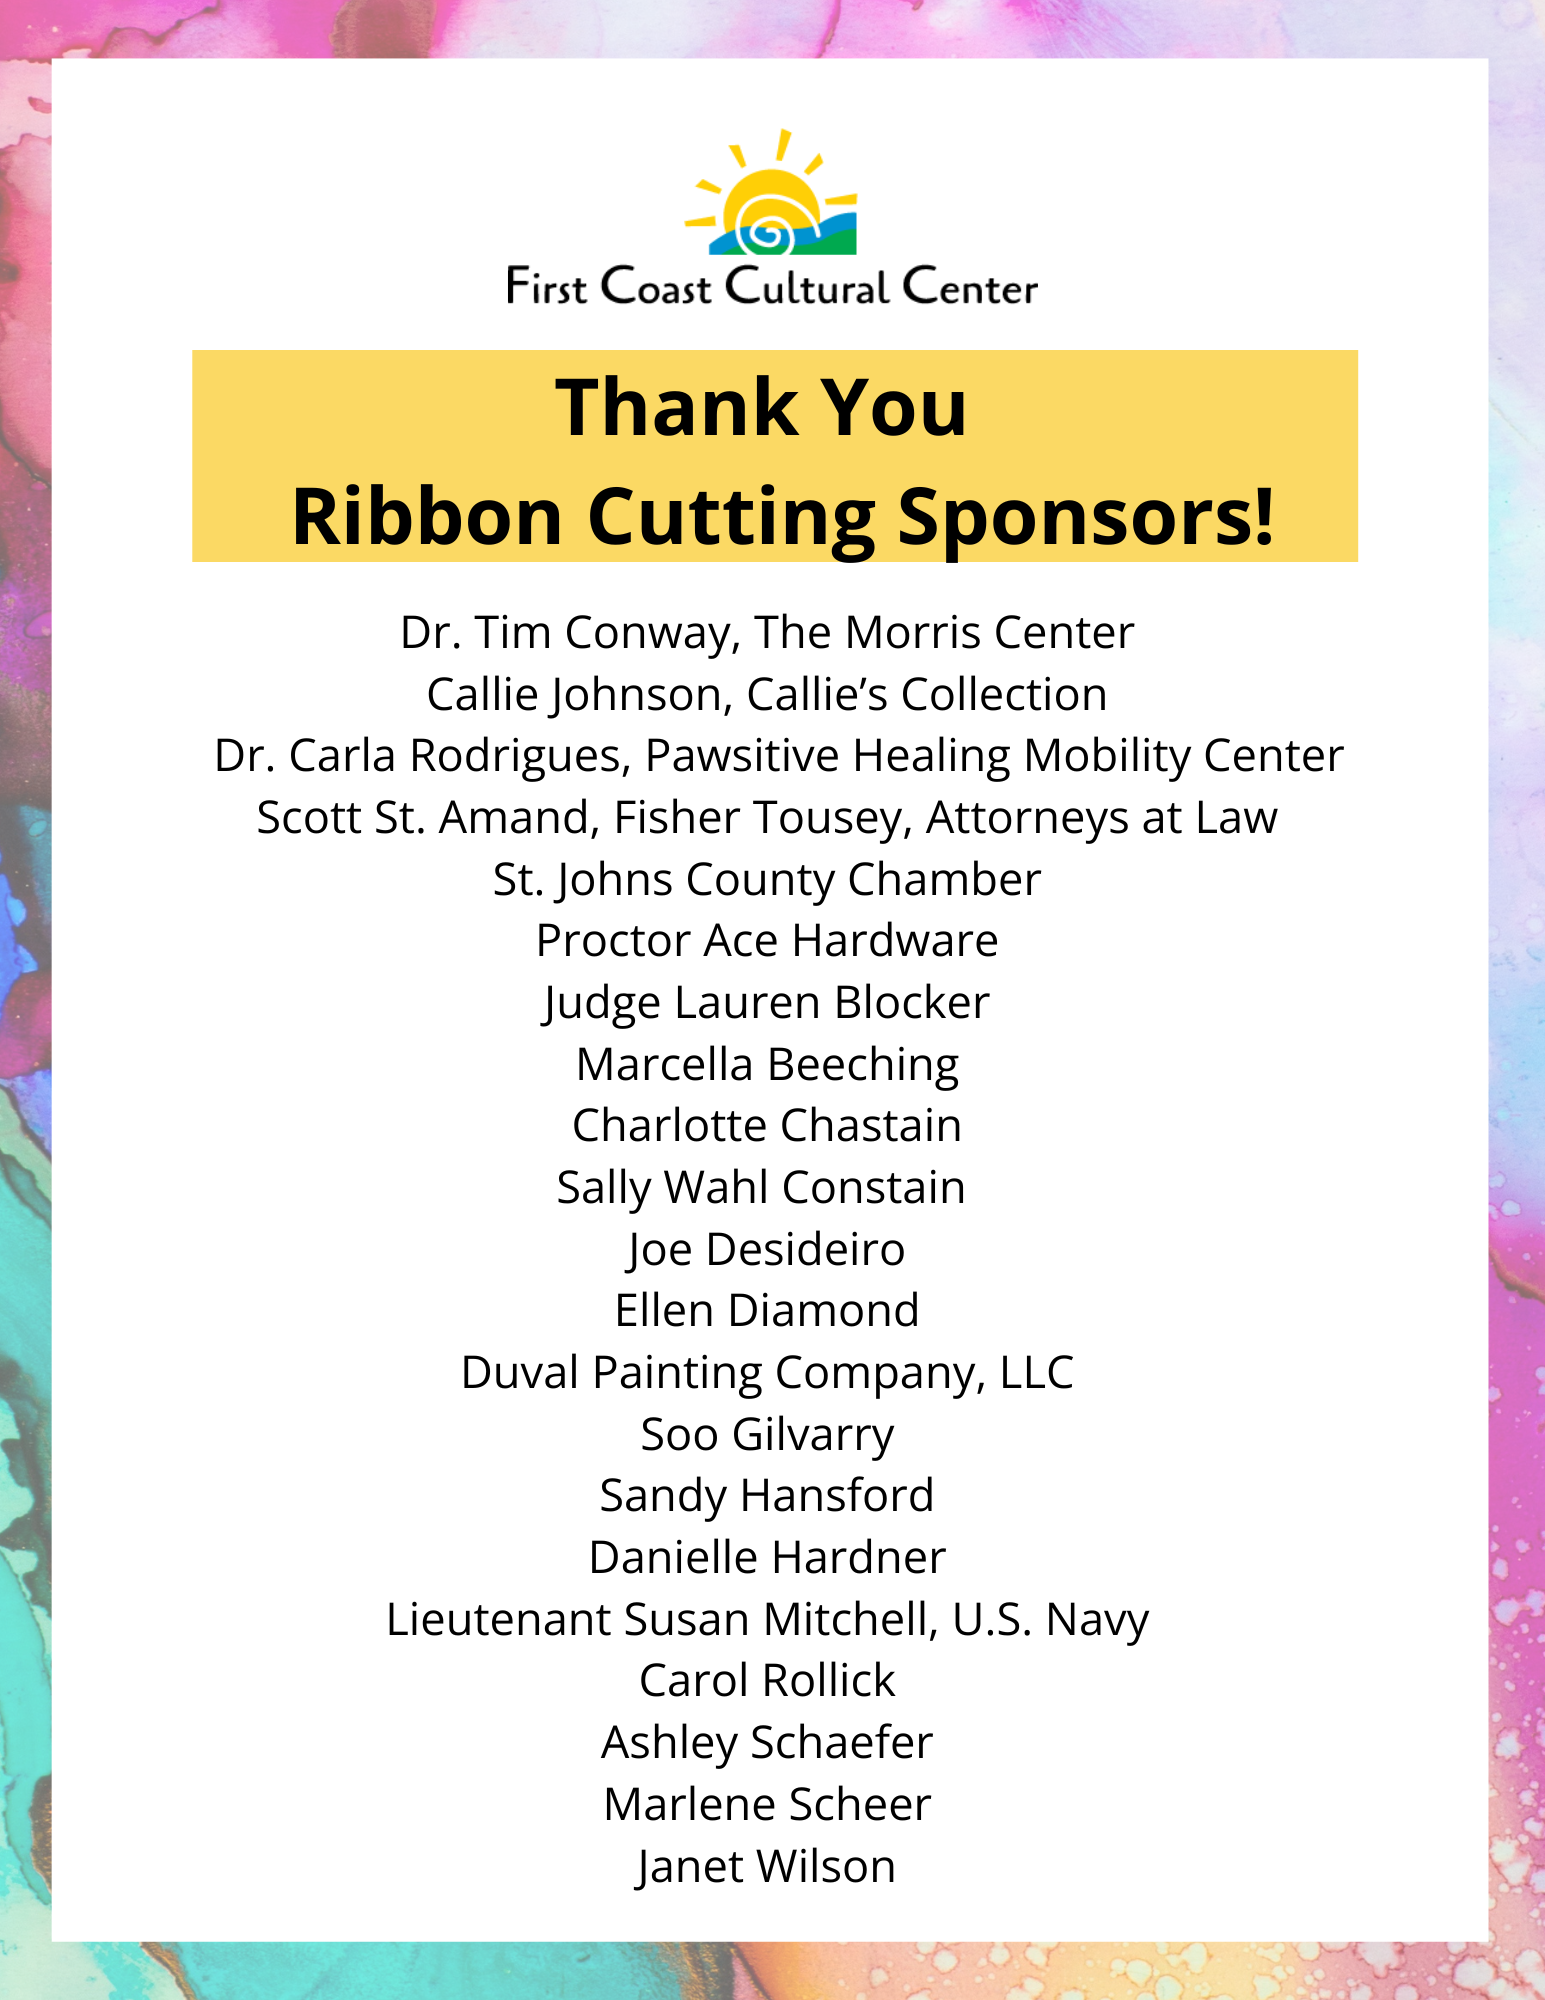 Ribbon cutting vendor sponsors 5